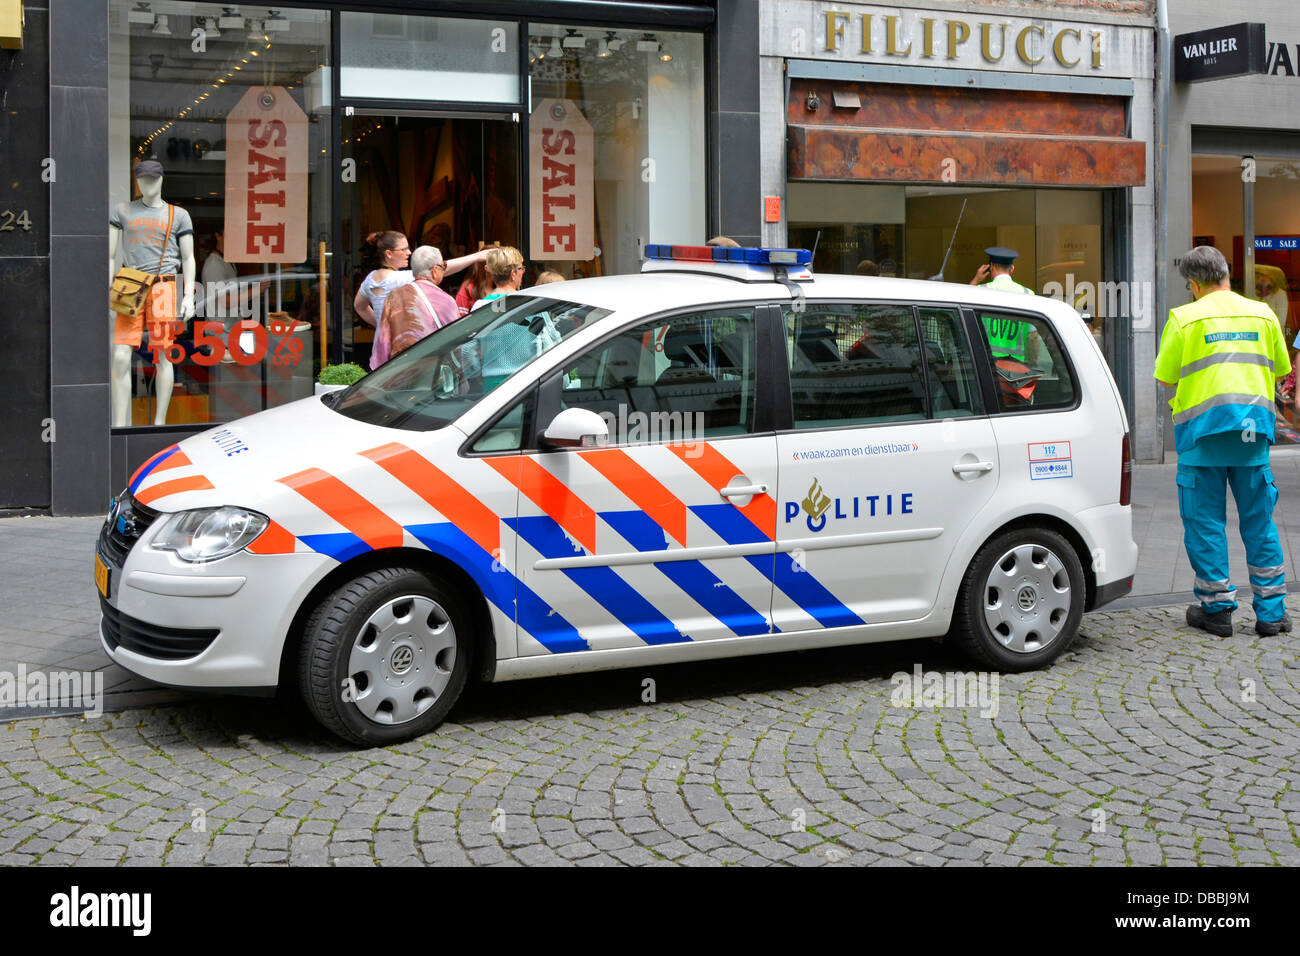 Maastricht police néerlandaise au travail assistant à une tentative de vol dans la bijouterie Filipucci Limburg pays-Bas (voir le lien web dans le panneau d'information Alamy ci-dessous) Banque D'Images